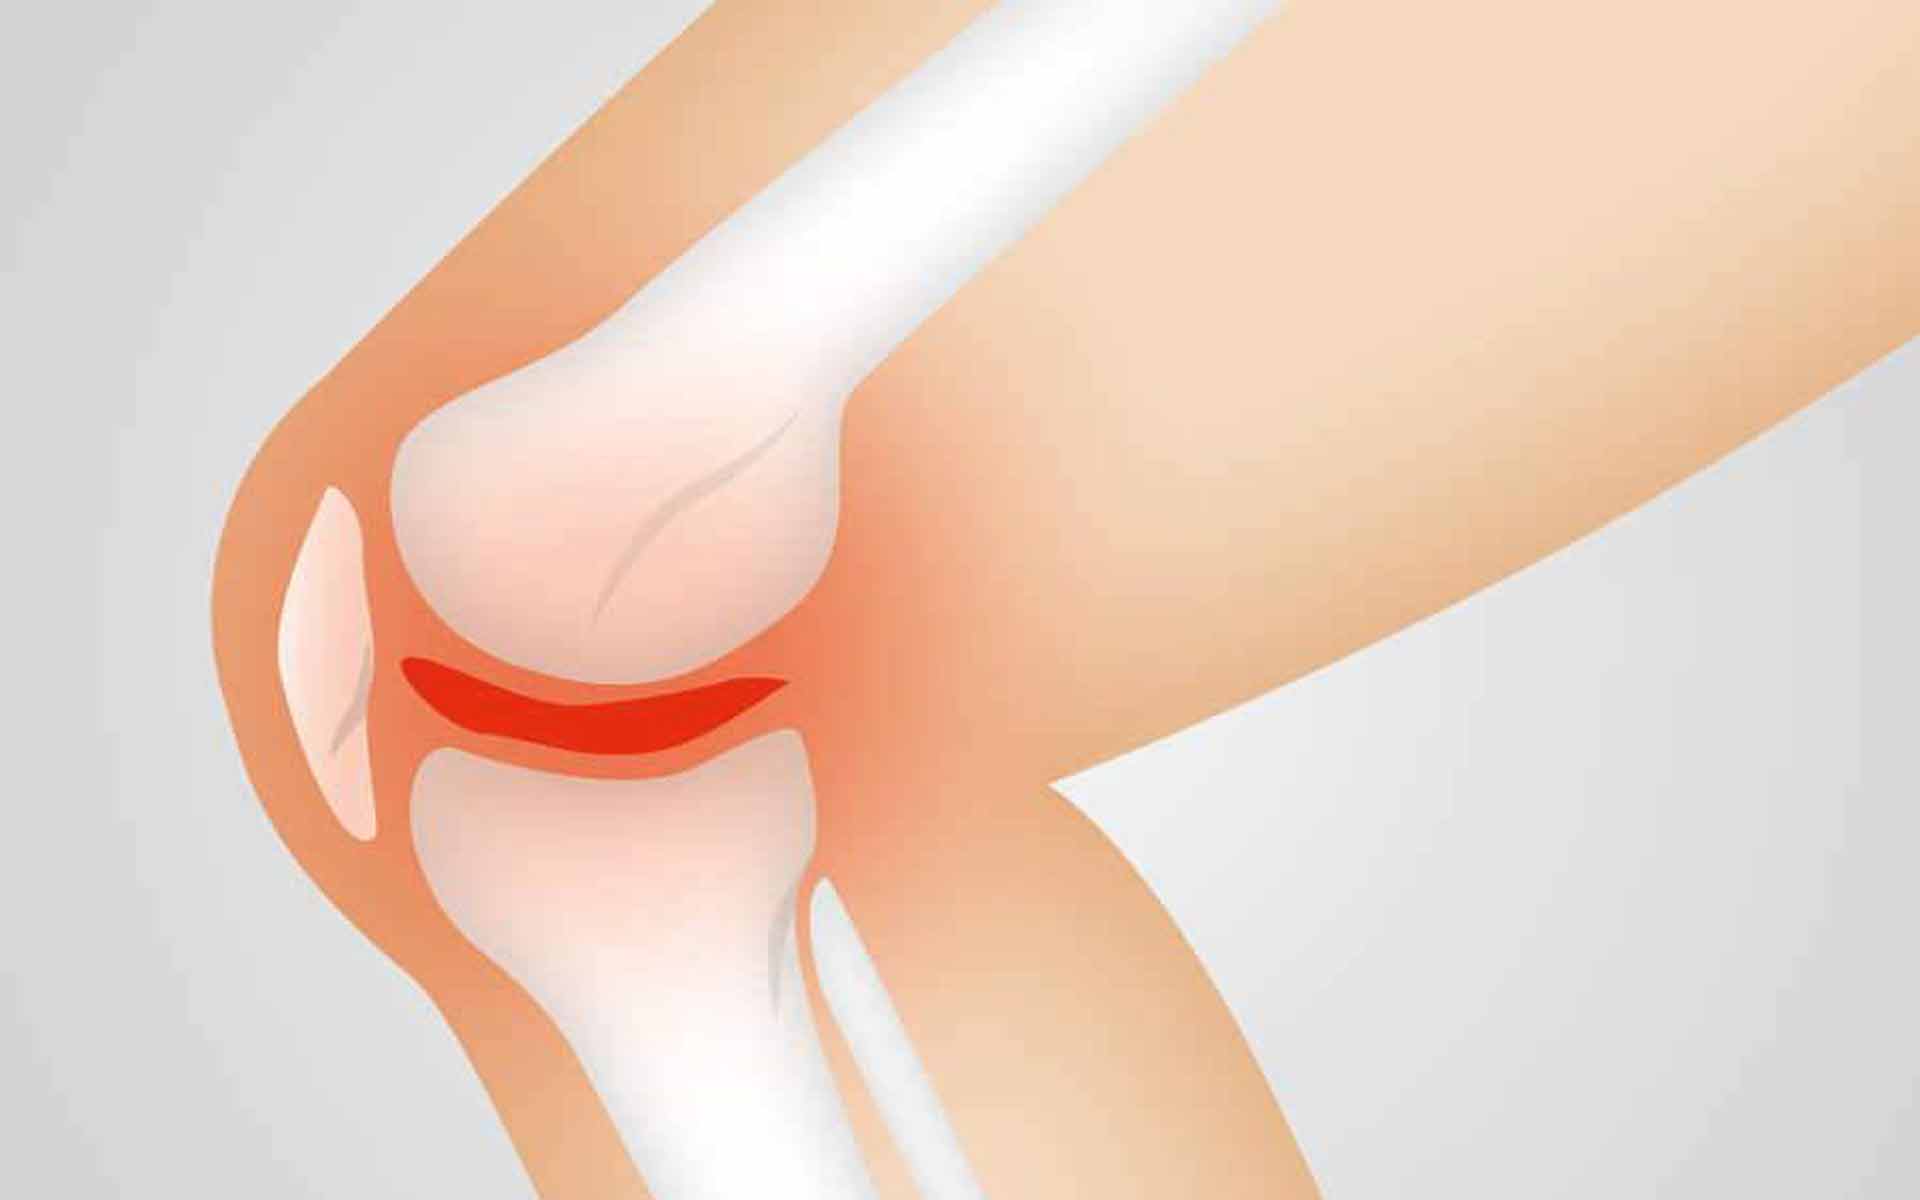 Factores de riesgo en un esguince de rodilla